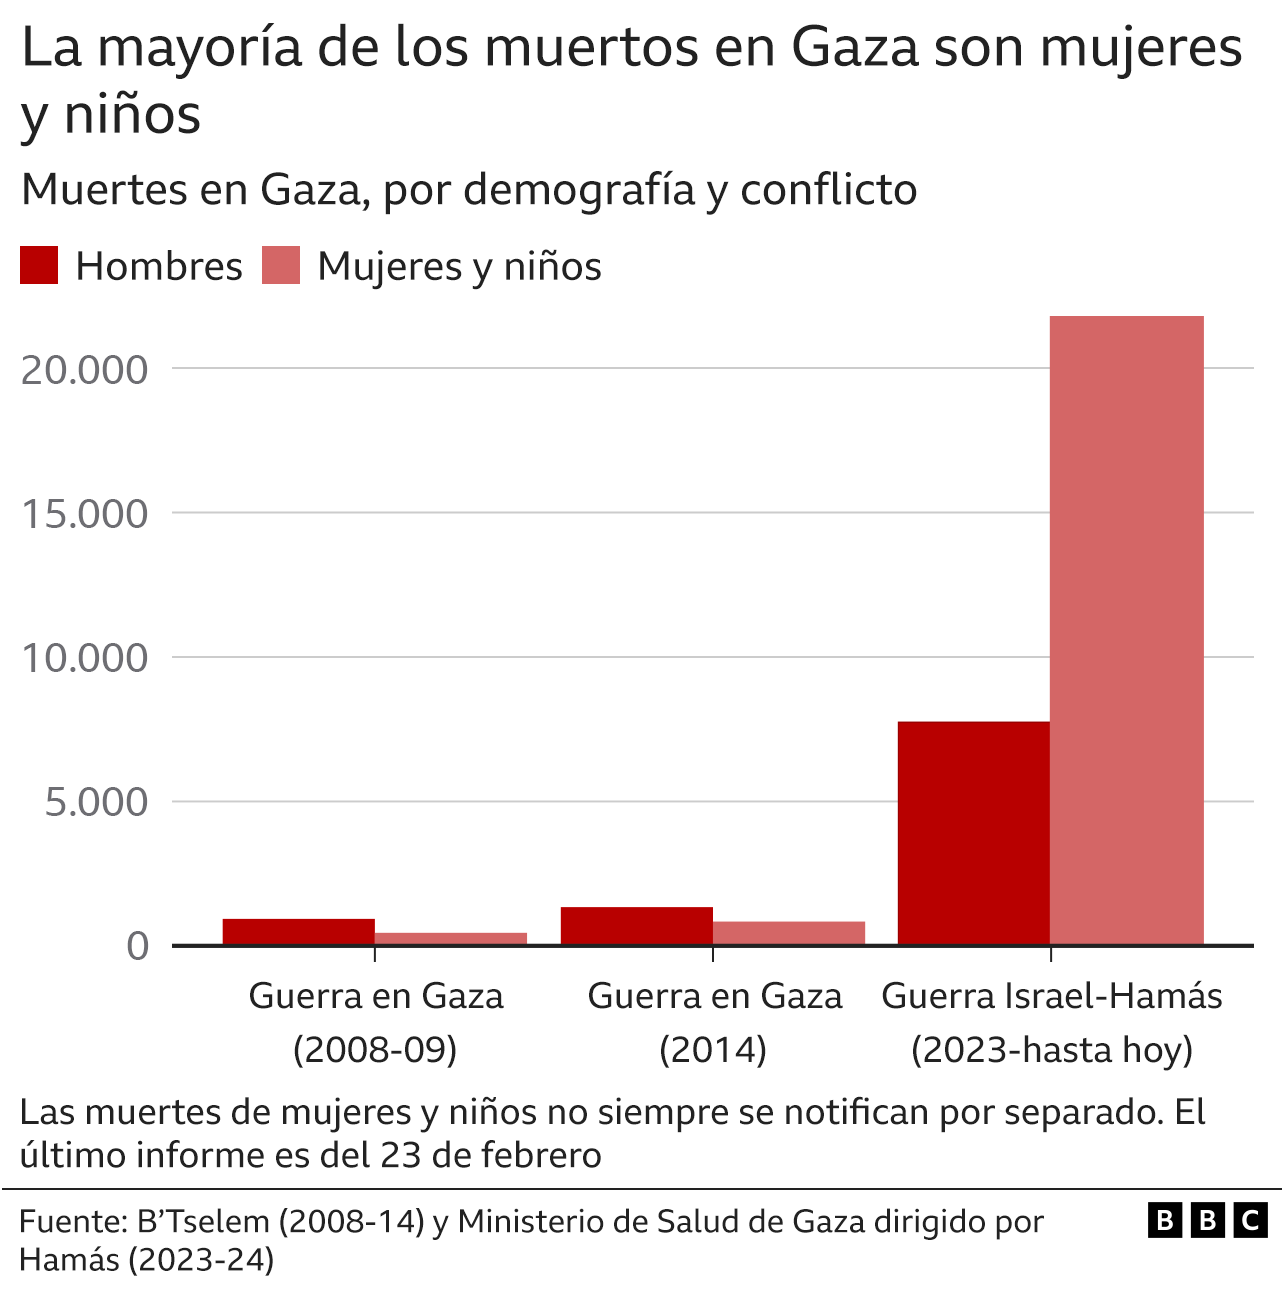 Gráfico de barras con las cifras de muertos en Gaza, discriminado entre hombres y mujeres y niños